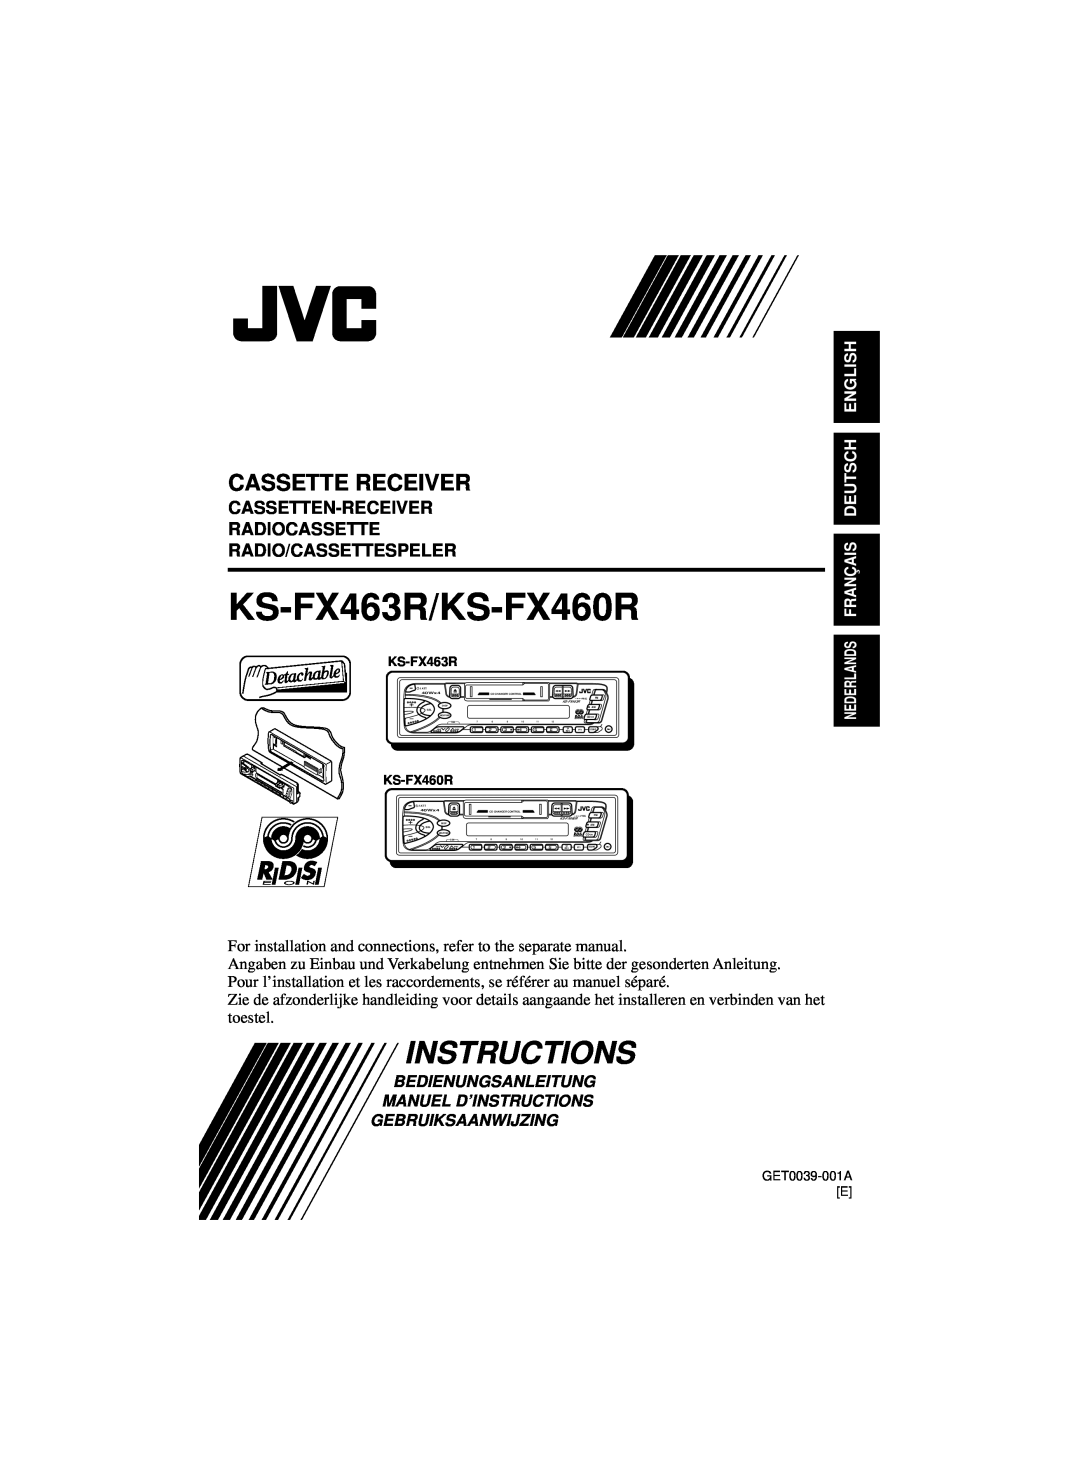 JVC manual Instructions, KS-FX463R/KS-FX460R, Cassette Receiver, Cassetten-Receiver Radiocassette, Radio/Cassettespeler 